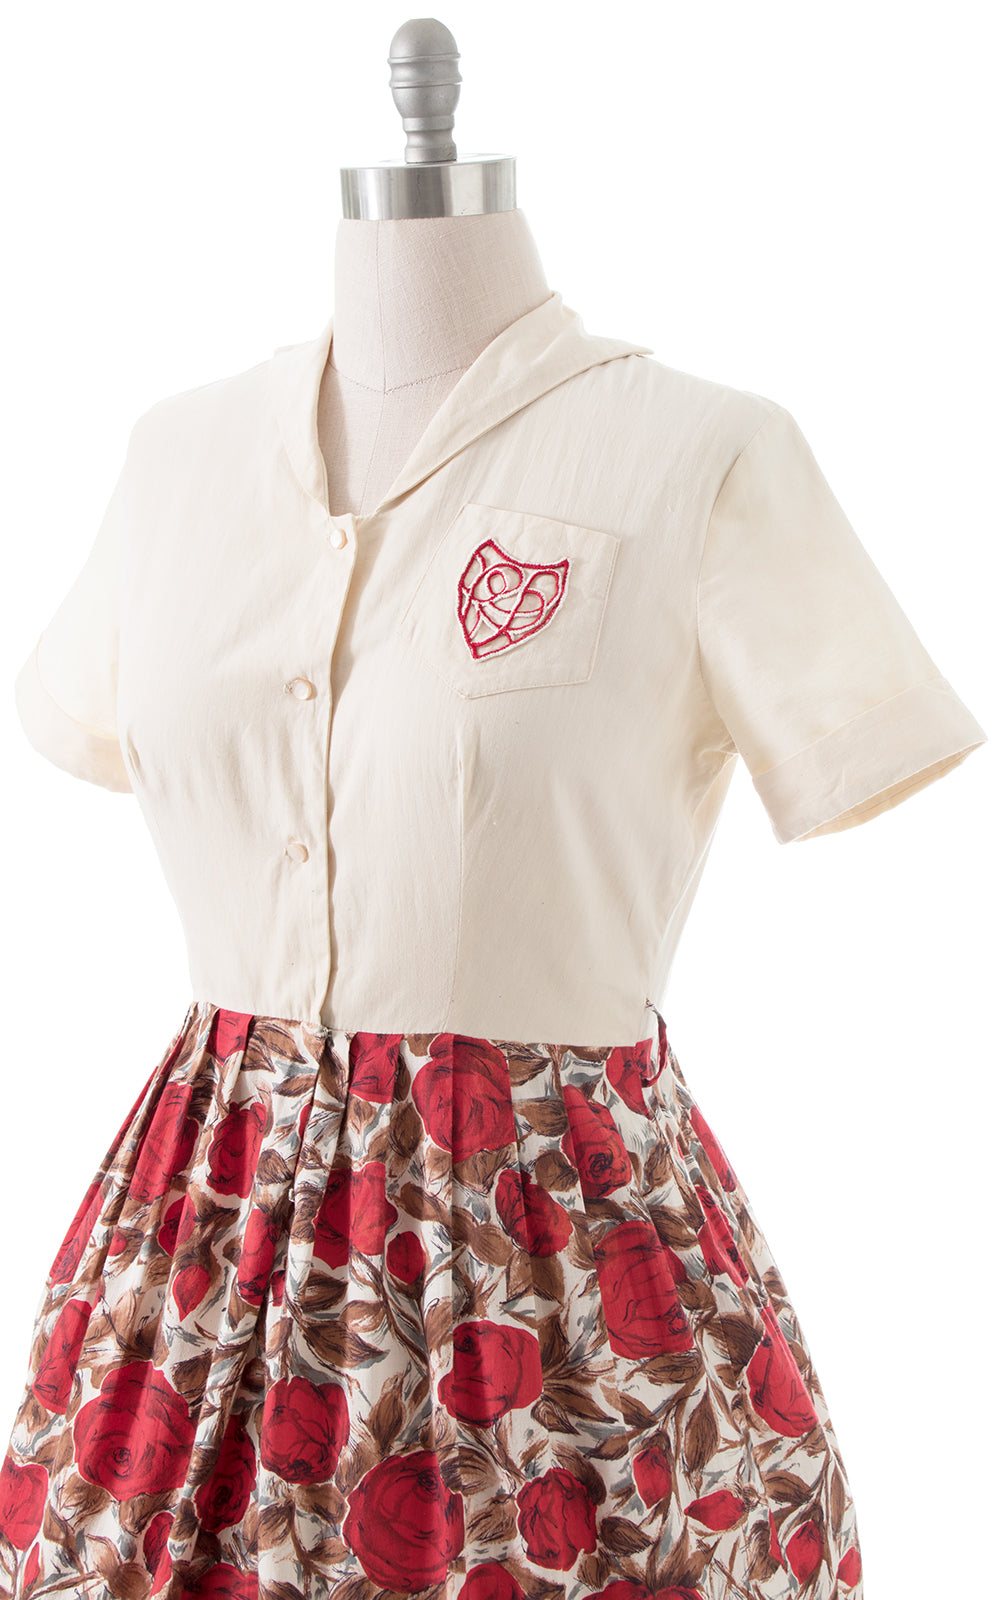 1950s Rose Print Cotton Shirtwaist Dress